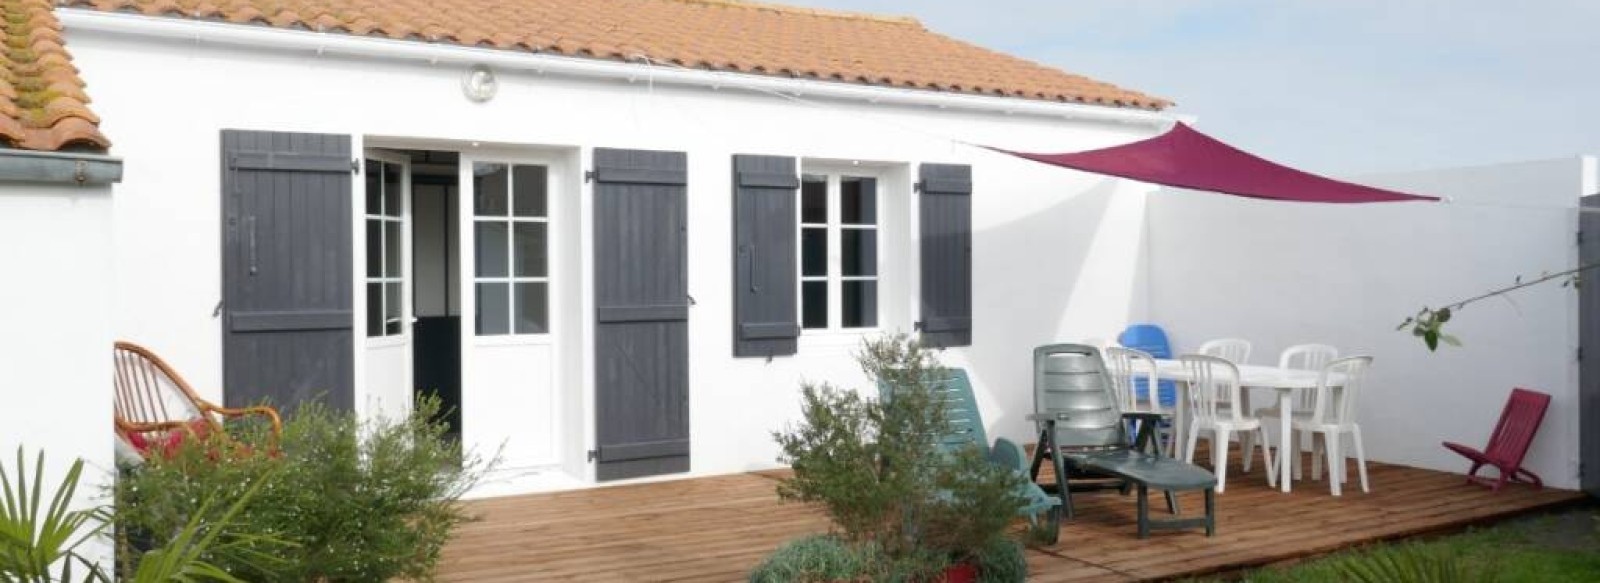 Maison de vacances proche centre-ville de Noirmoutier en l'ile